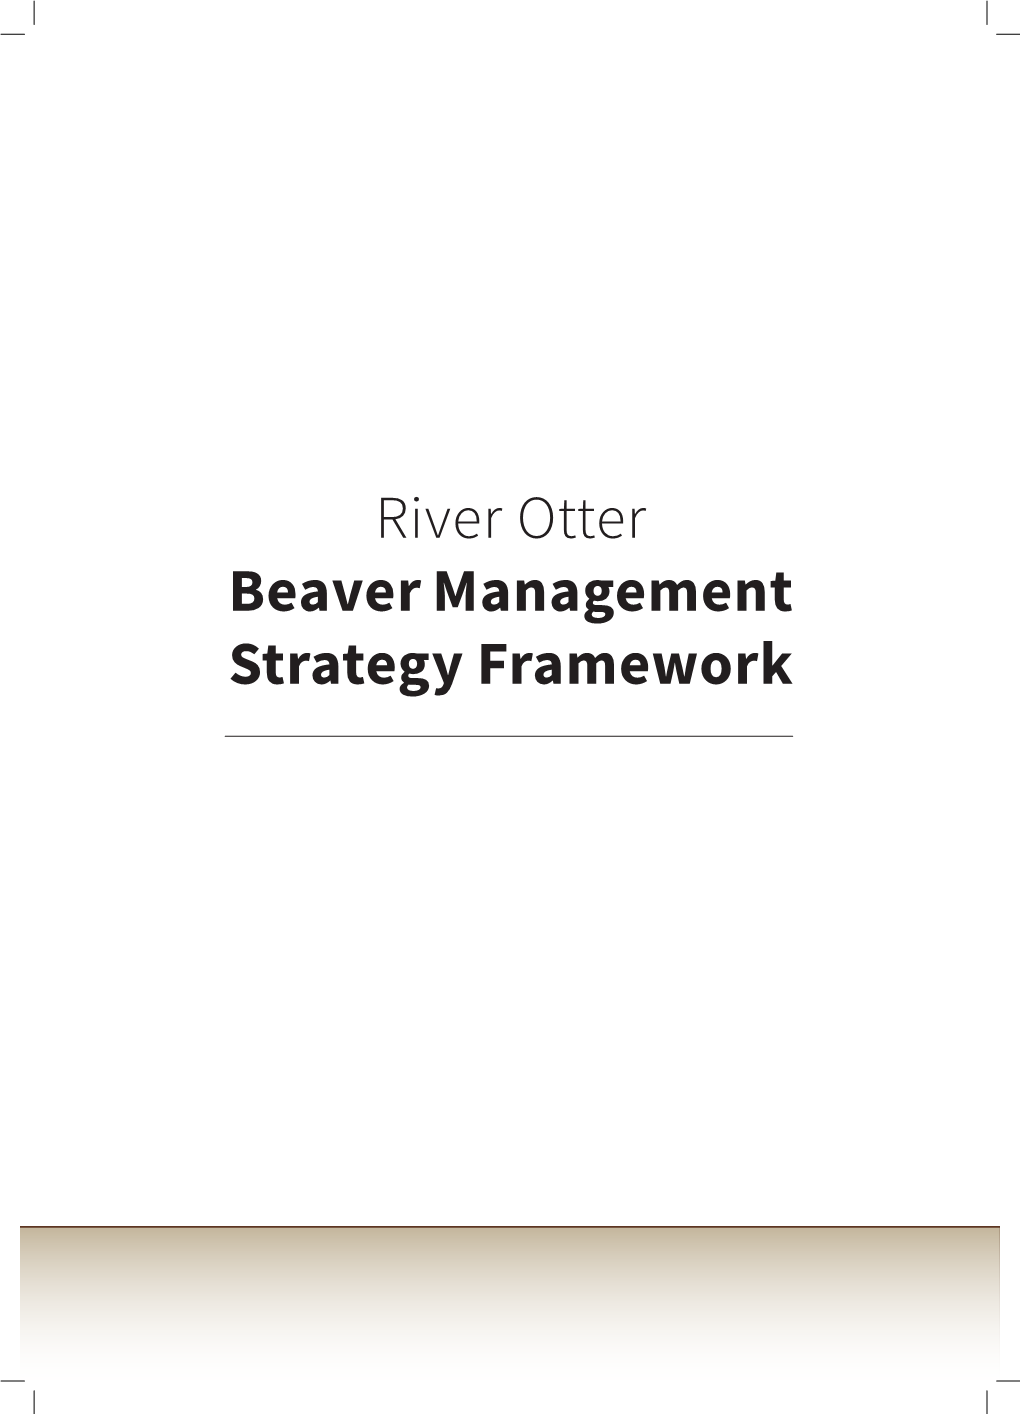 River Otter Beaver Management Strategy Framework